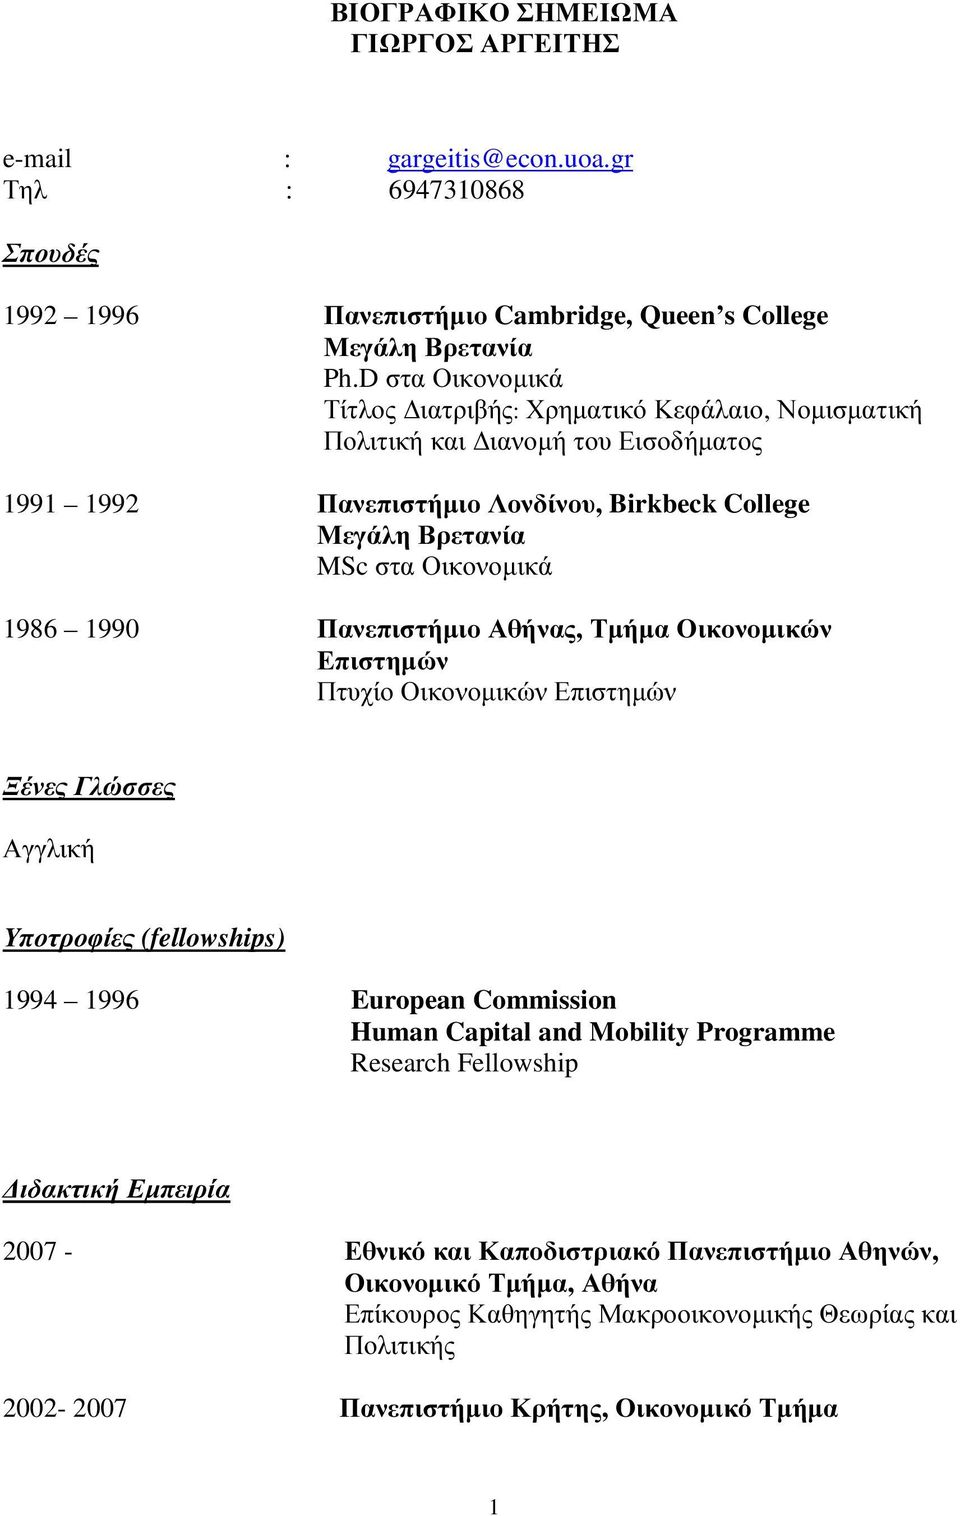 1990 Πανεπιστήµιο Αθήνας, Τµήµα Οικονοµικών Επιστηµών Πτυχίο Οικονοµικών Επιστηµών Ξένες Γλώσσες Αγγλική Υποτροφίες (fellowships) 1994 1996 European Commission Human Capital and Mobility